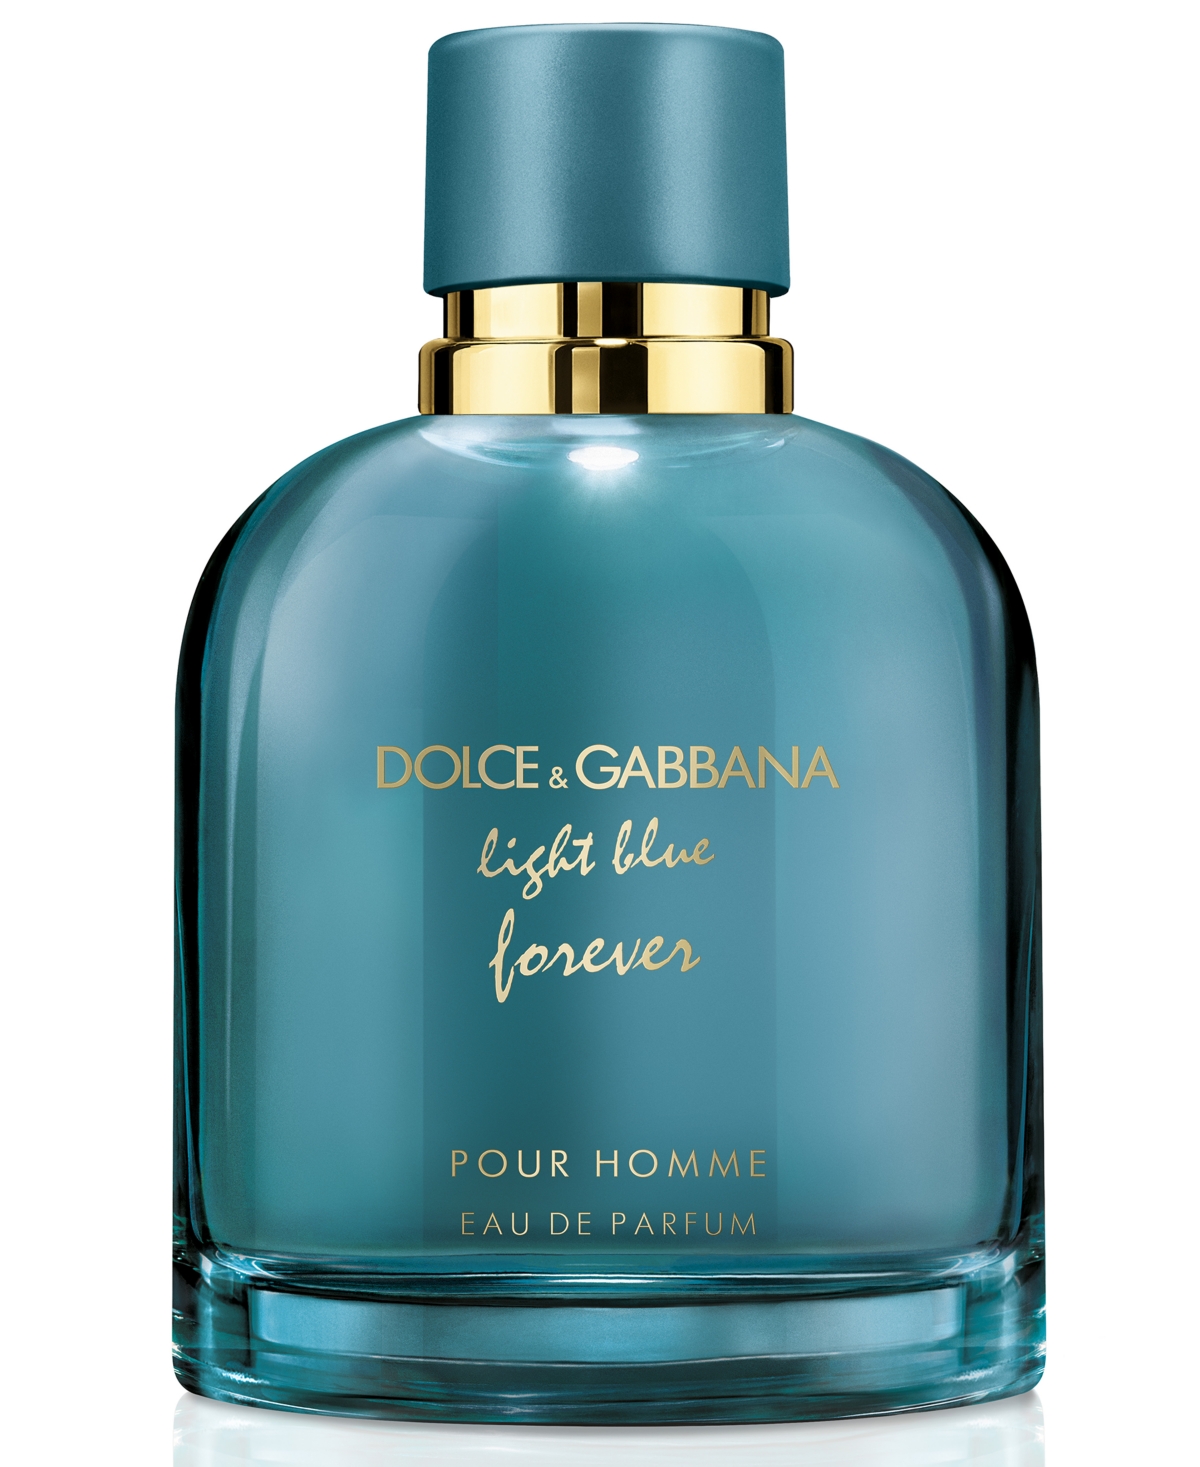 Dolce & Gabbana DOLCE&GABBANA Men's Light Blue Forever Pour Homme Eau de  Parfum Spray, . & Reviews - Cologne - Beauty - Macy's